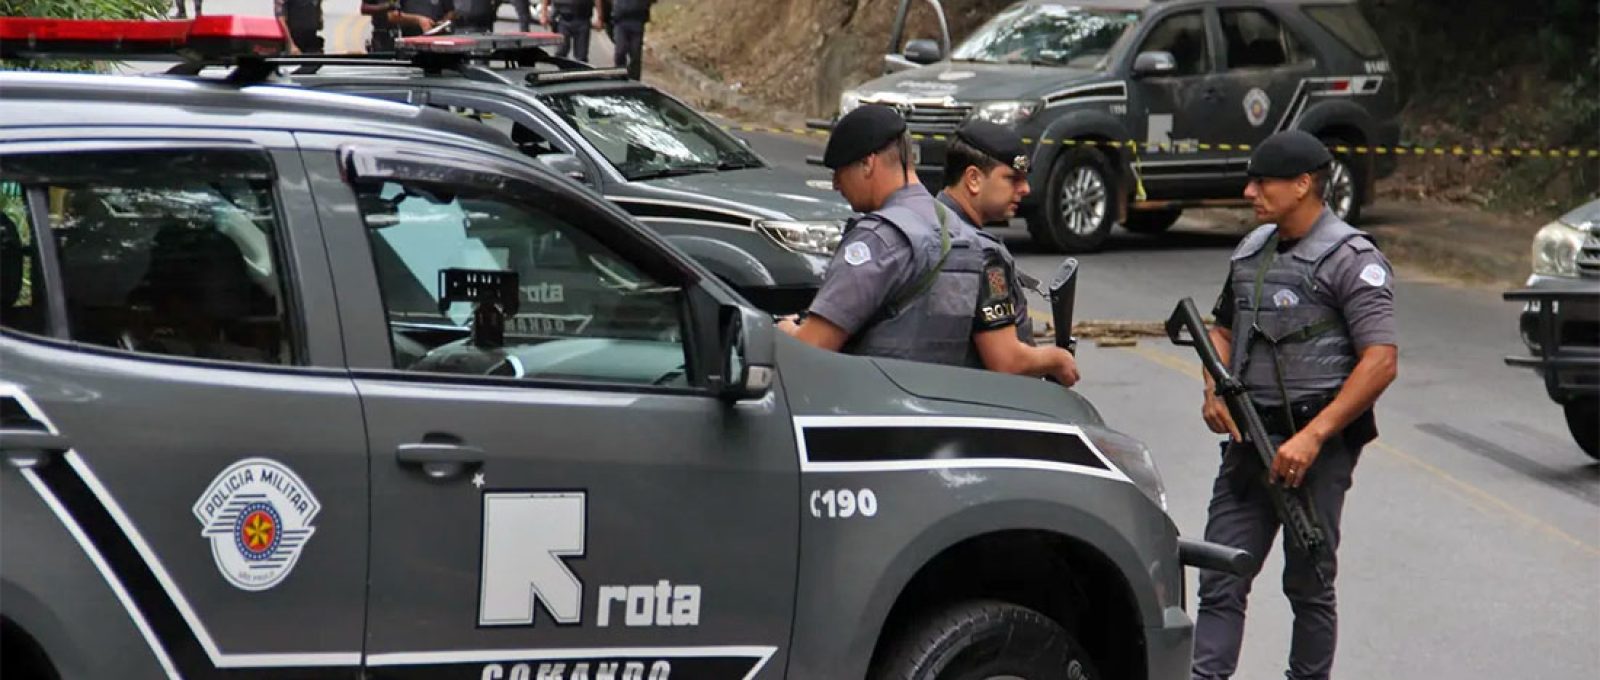 Policiais militares de São Paulo durante uma ocorrência de roubo a dois bancos na cidade de Guararema-SP, em abril de 2019 (Jonny Ueda/Futura Press/Estadão Conteúdo).